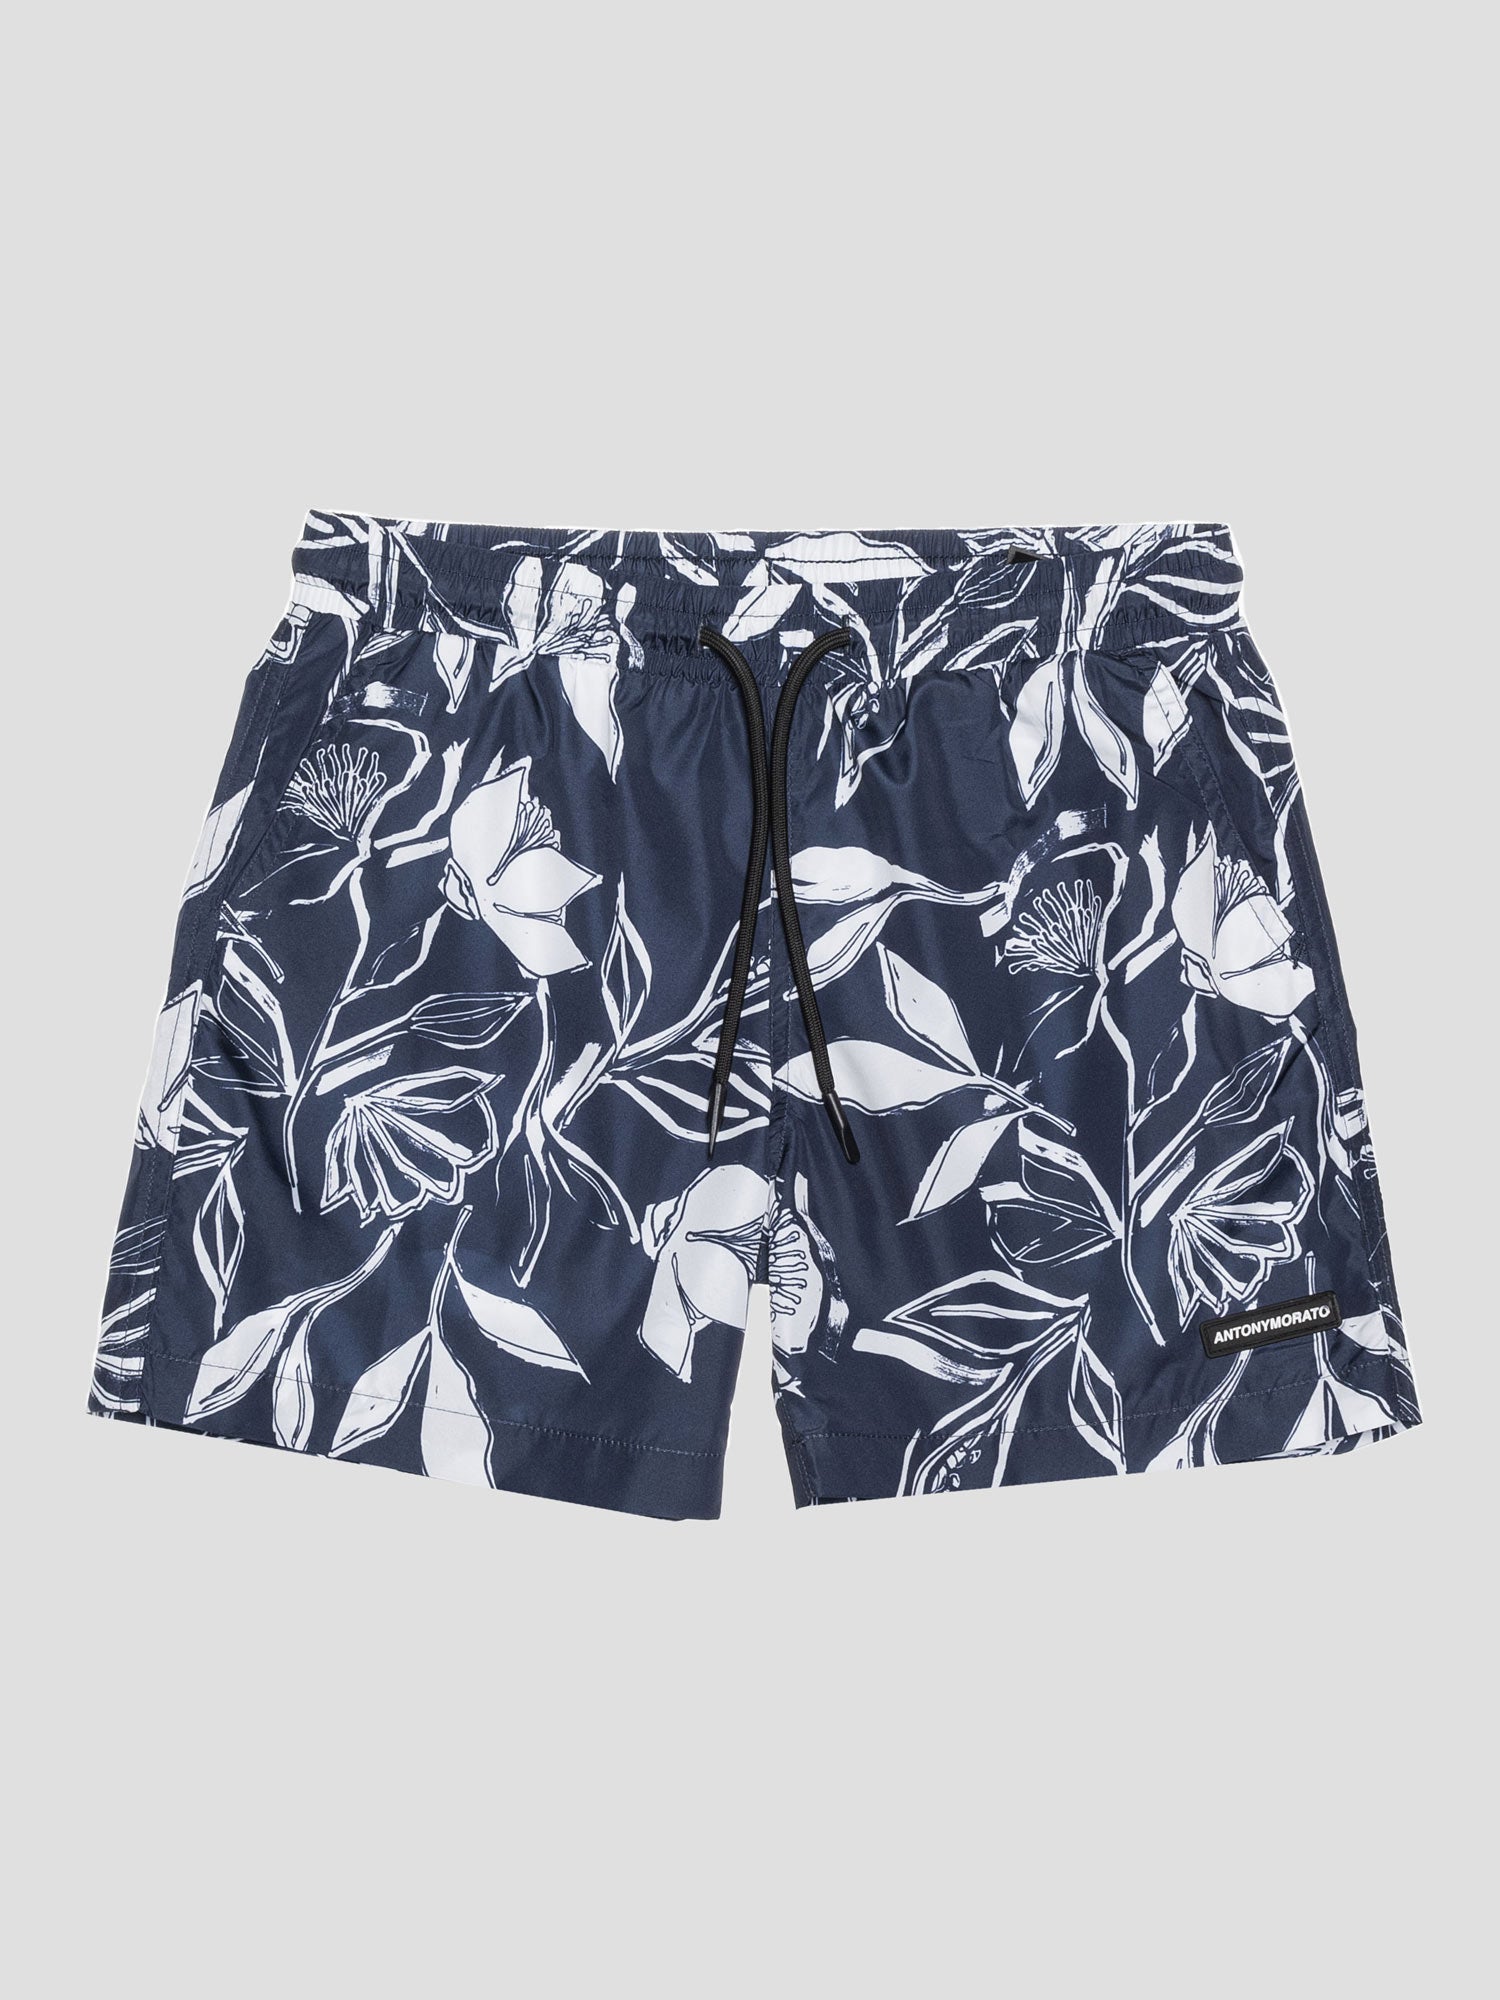 Antony Morato Boy's Swim shorts- Beachwear